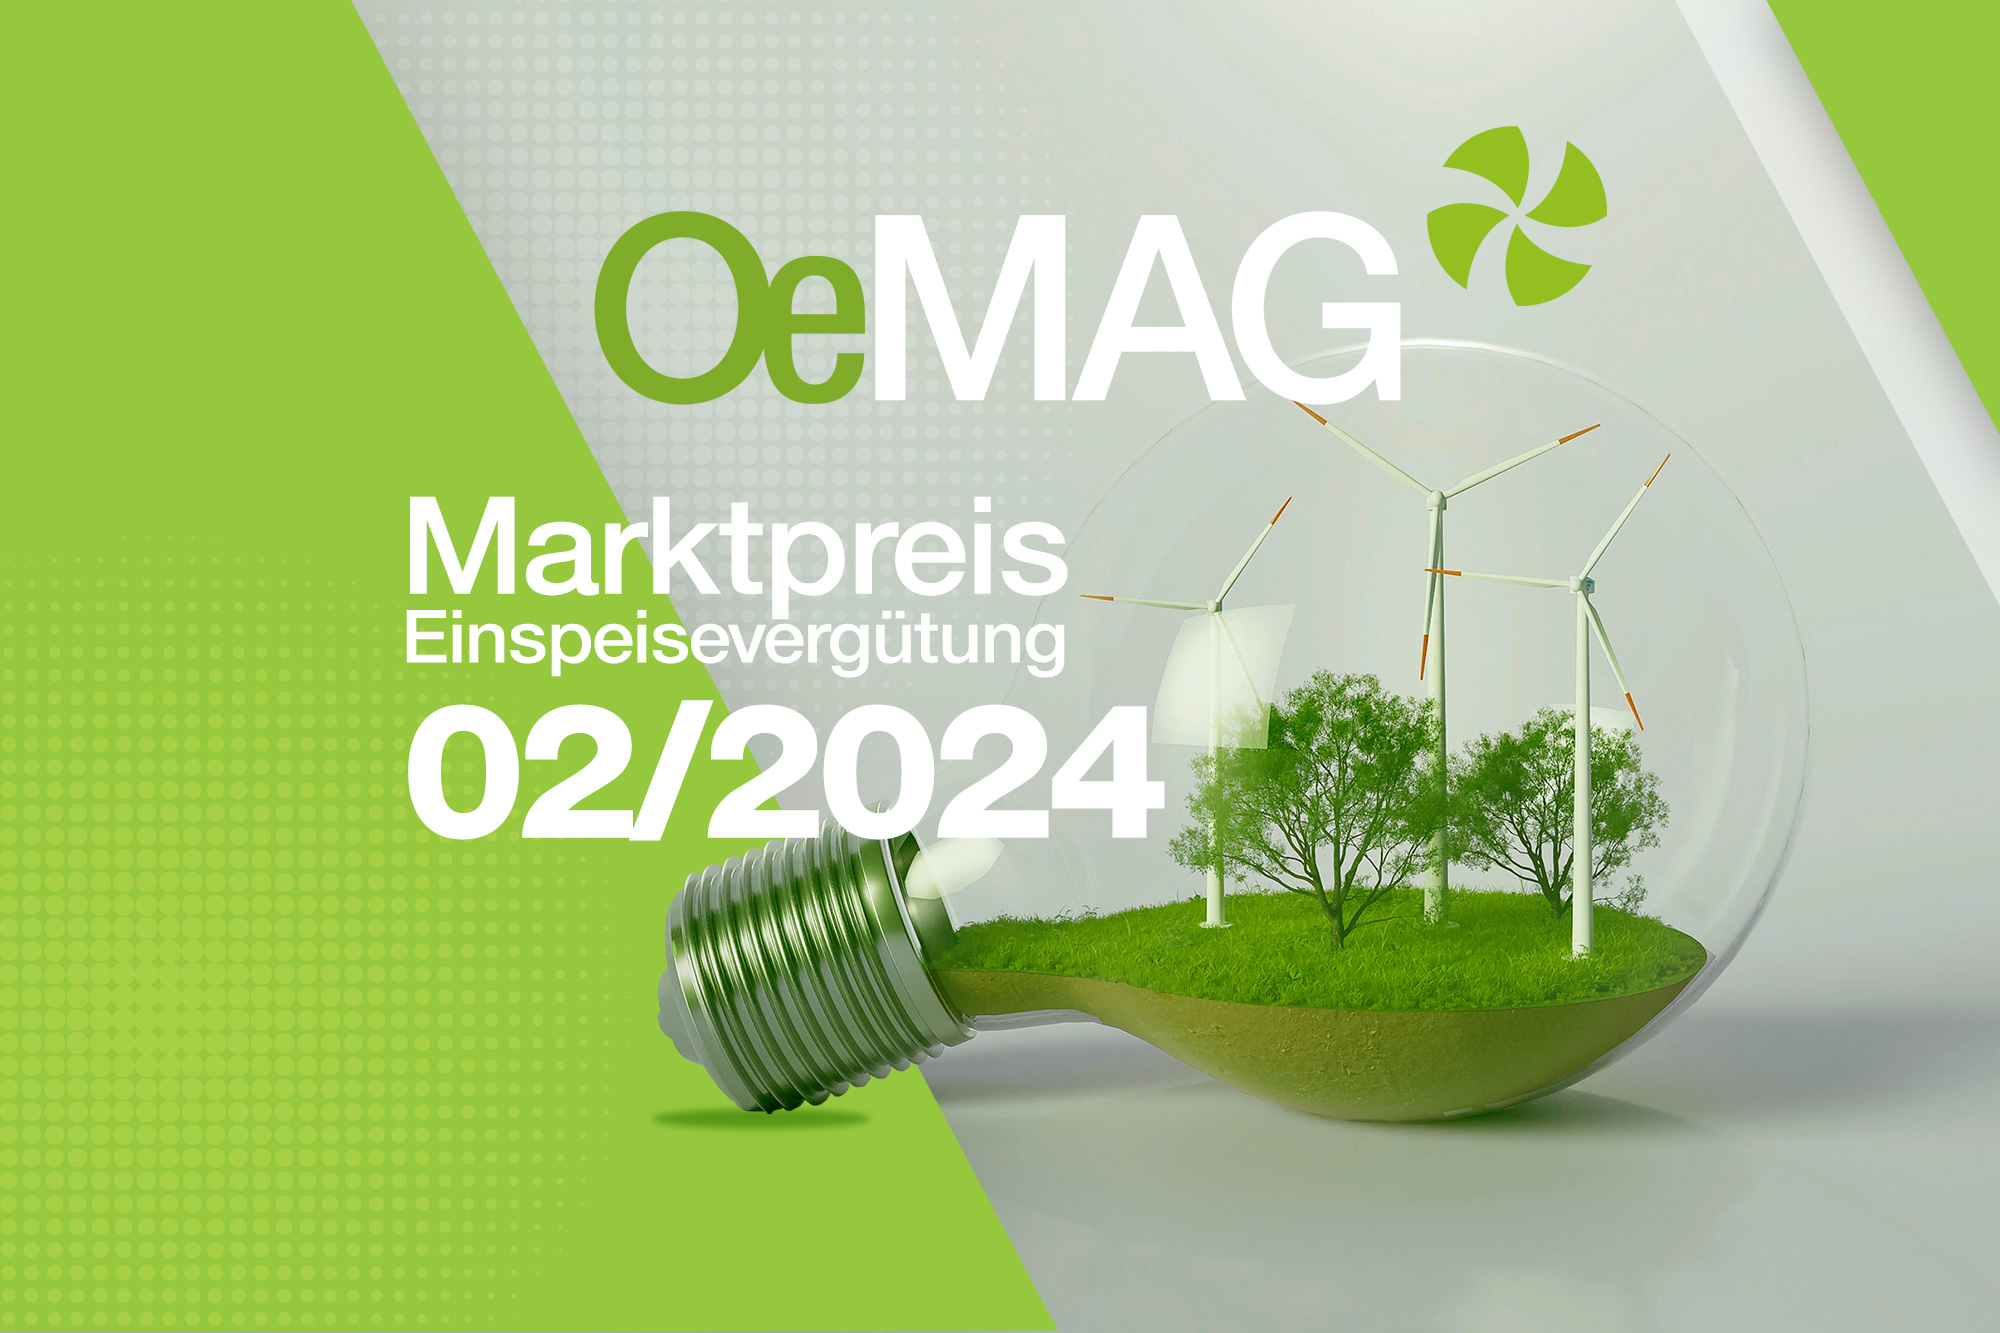 OeMAG Marktpreis Februar 2024: 6,29 ct/kWh